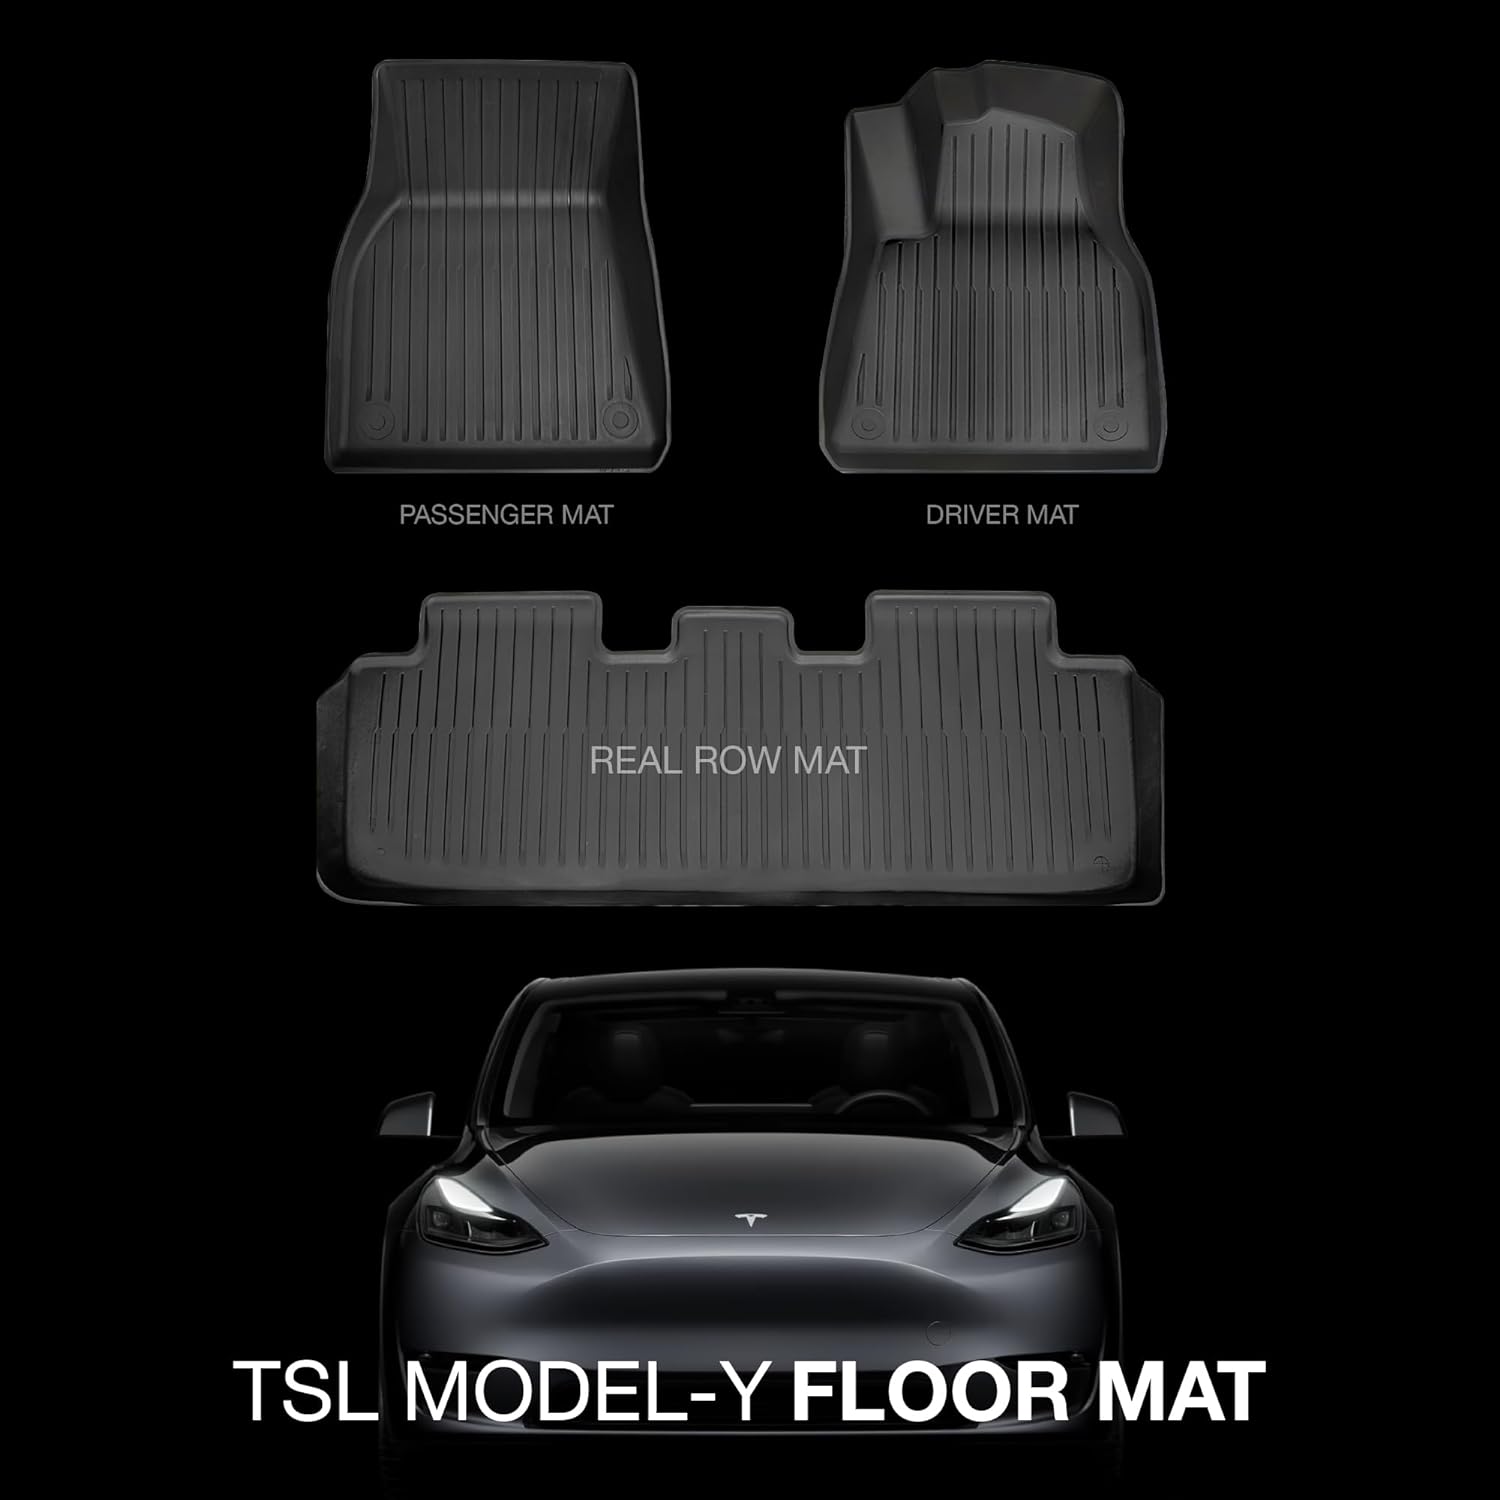 Bundle 3: Model Y Floor Mats and Liners